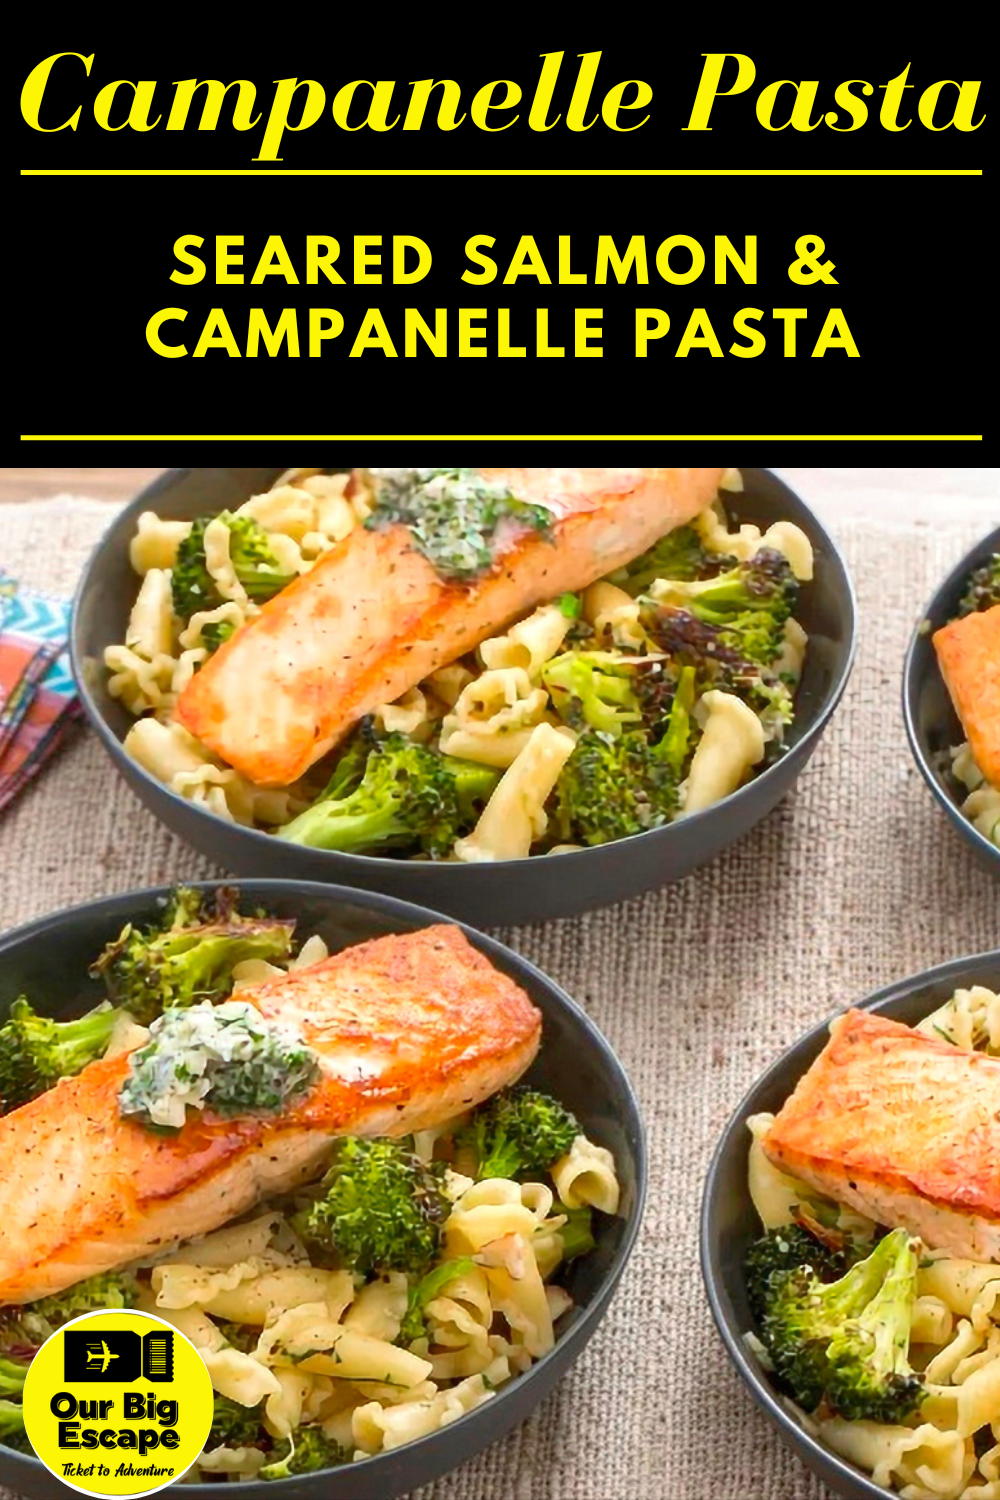 11. Seared Salmon & Campanelle Pasta